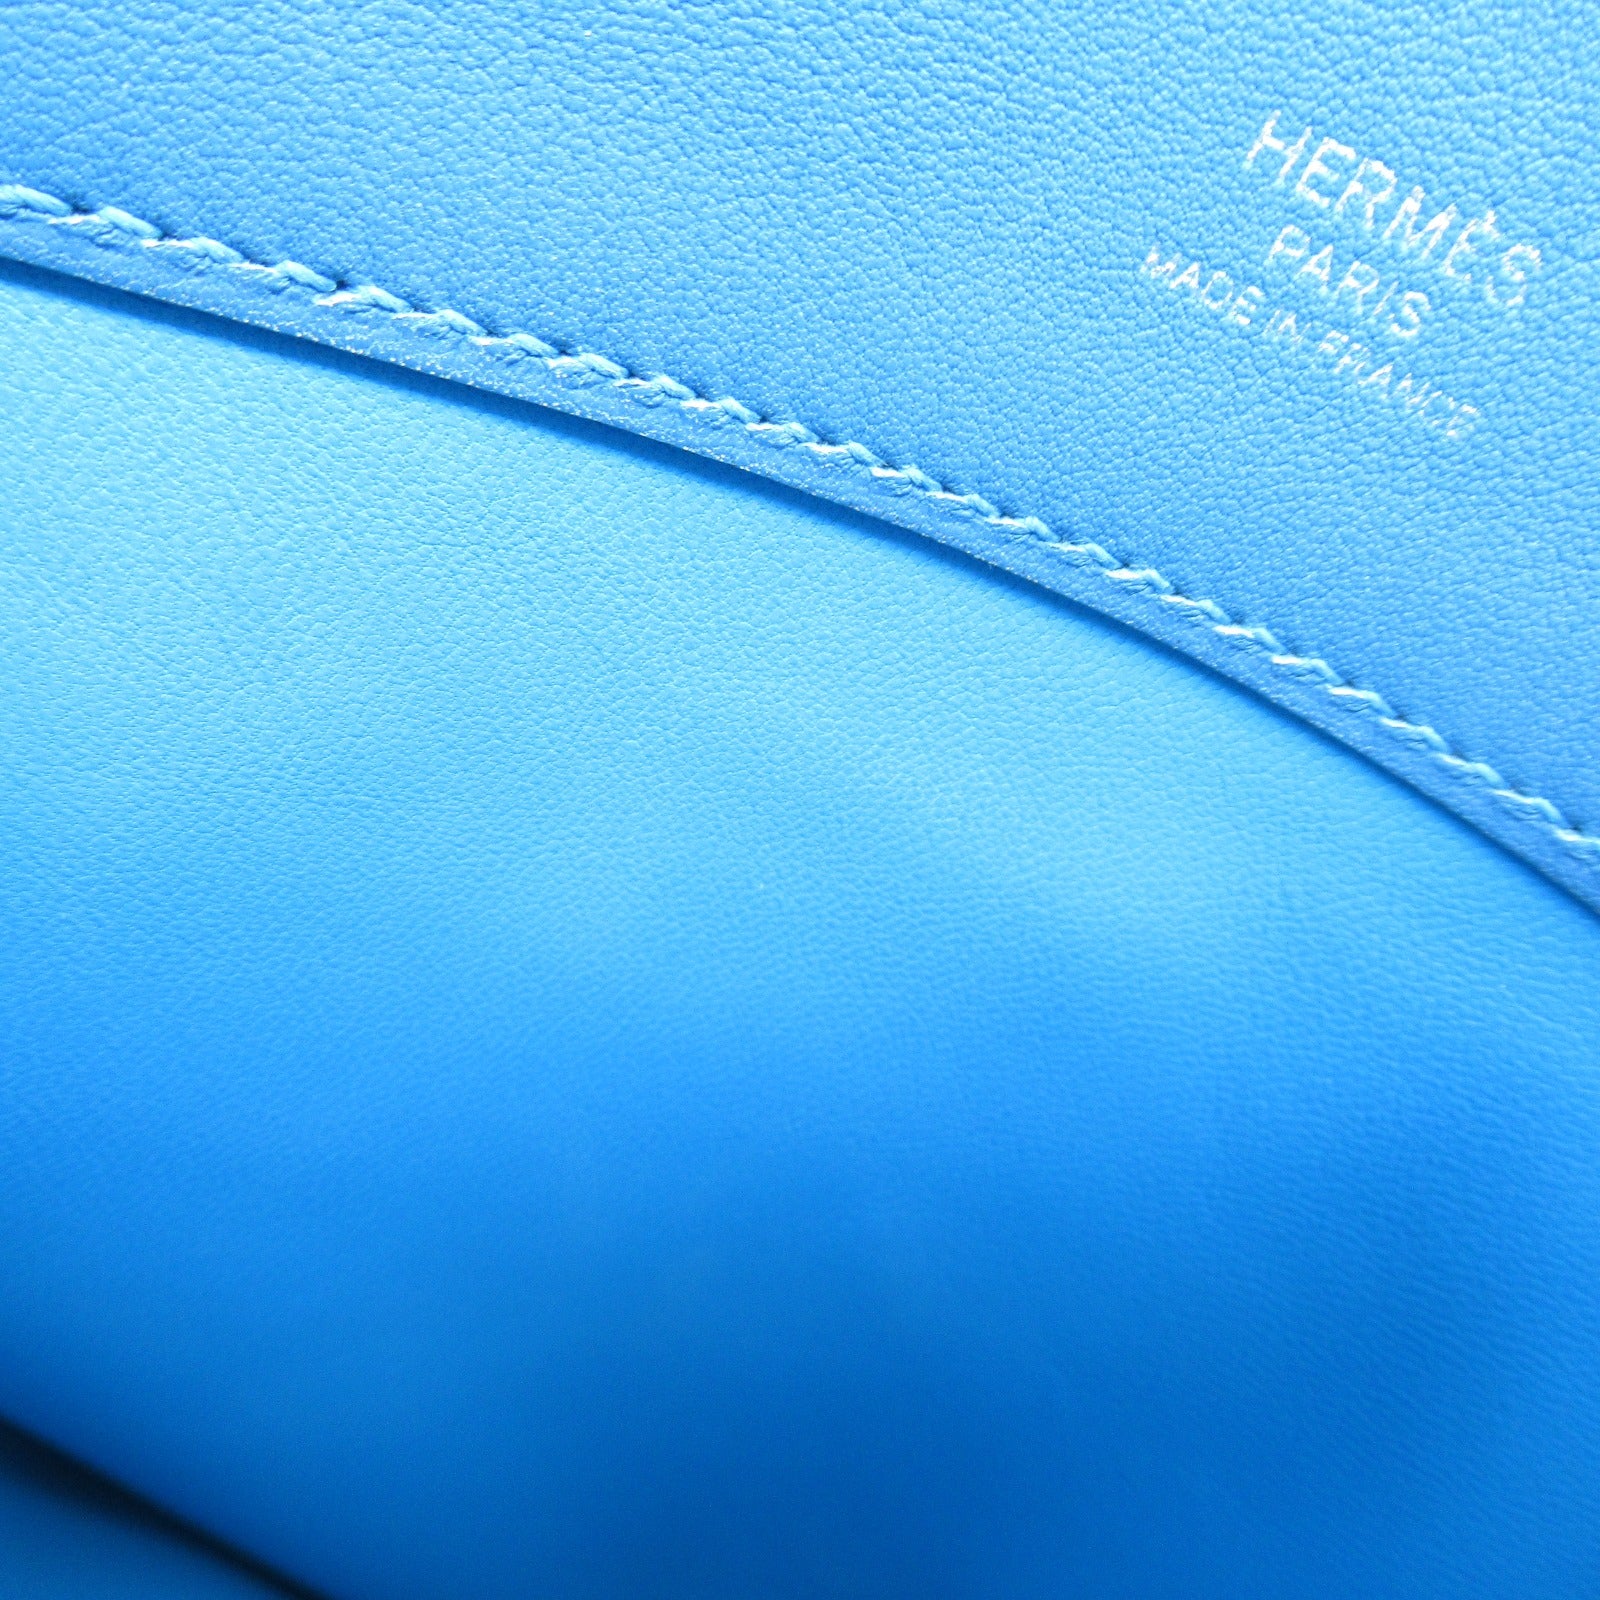 Hermes Sack Aren MINI Shoulder Bag Handbag Leather Voseyft   Blue 082365CK